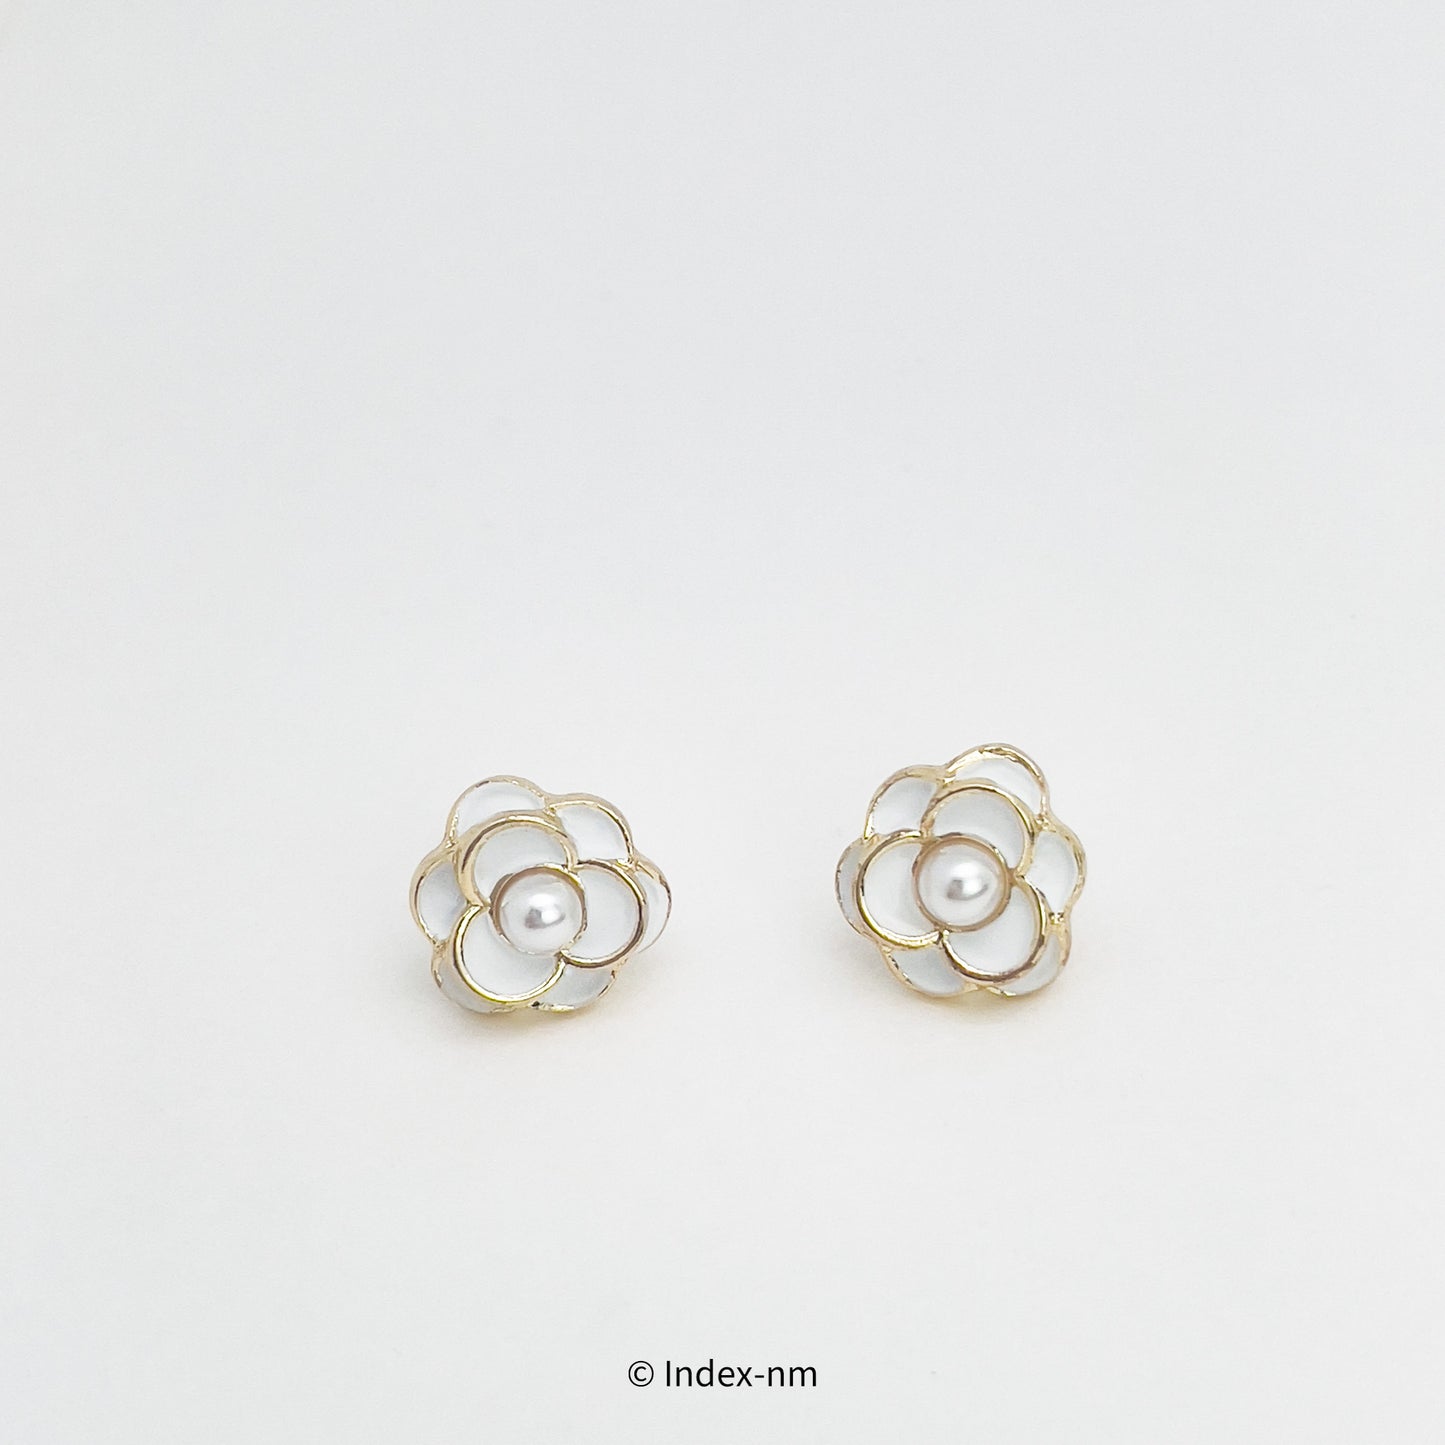 Dainty Summer White Flower Stud Earrings